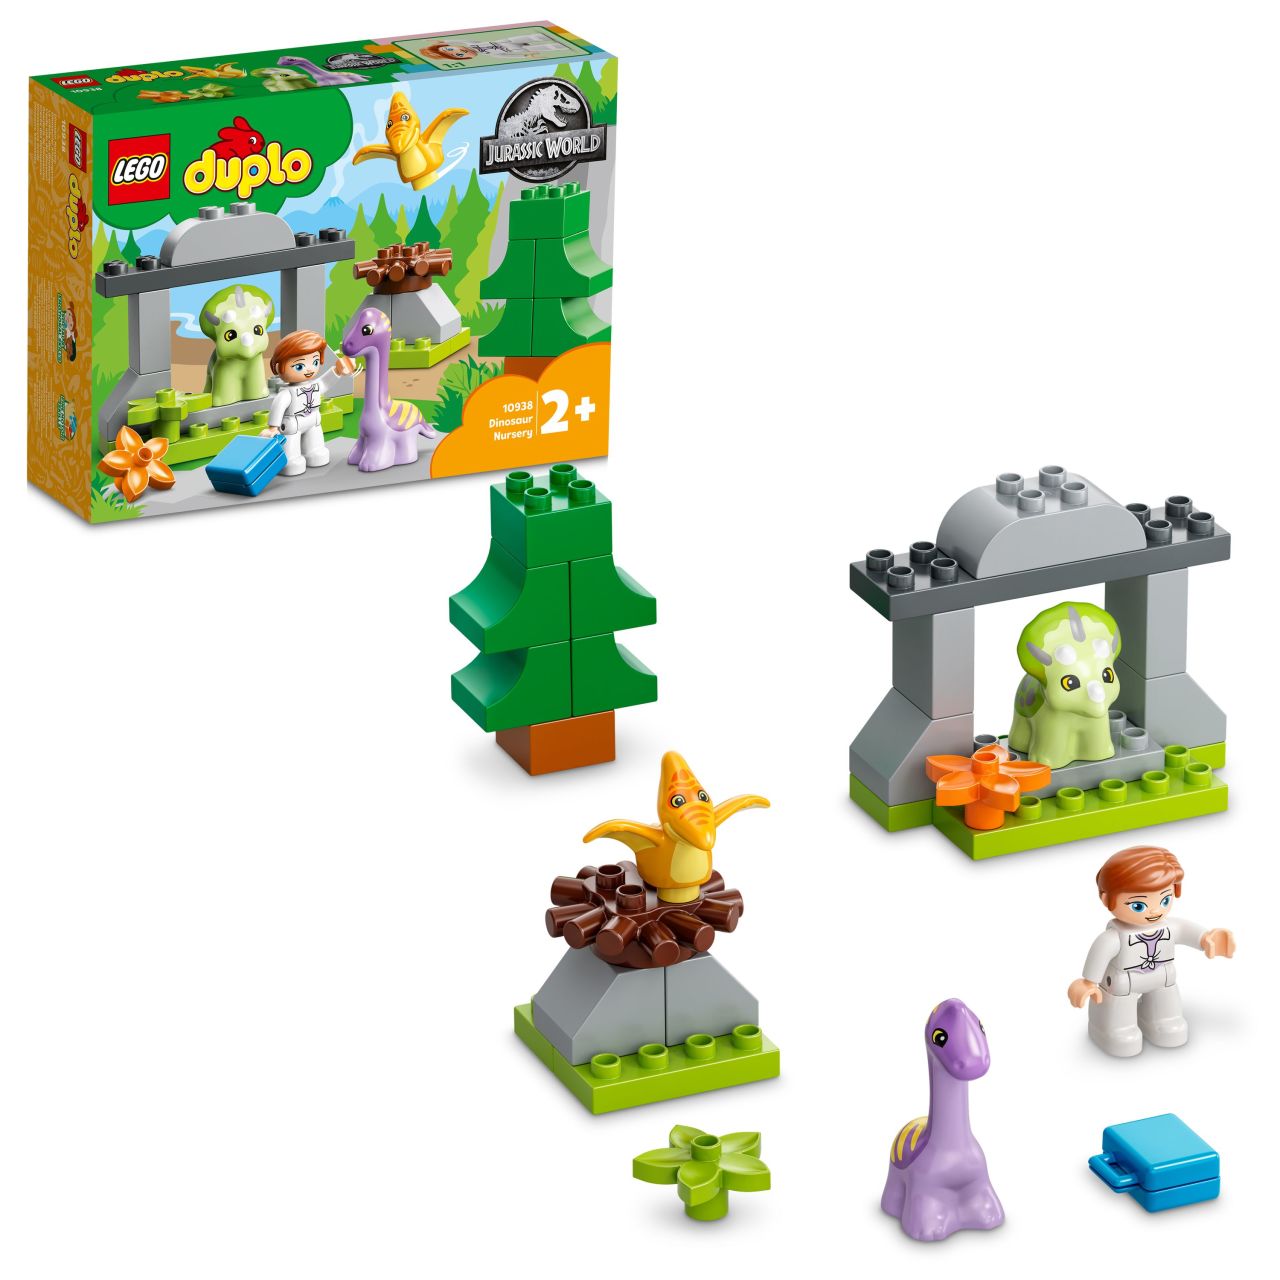 LEGO® DUPLO® Jurassic World Dinozor Yuvası 10938 - 2 Yaş ve Üzeri Çocuklar için 3 Hayvan ve bir Claire Dearing Figürü İçeren Oyuncak Yapım Seti (27 Parça)